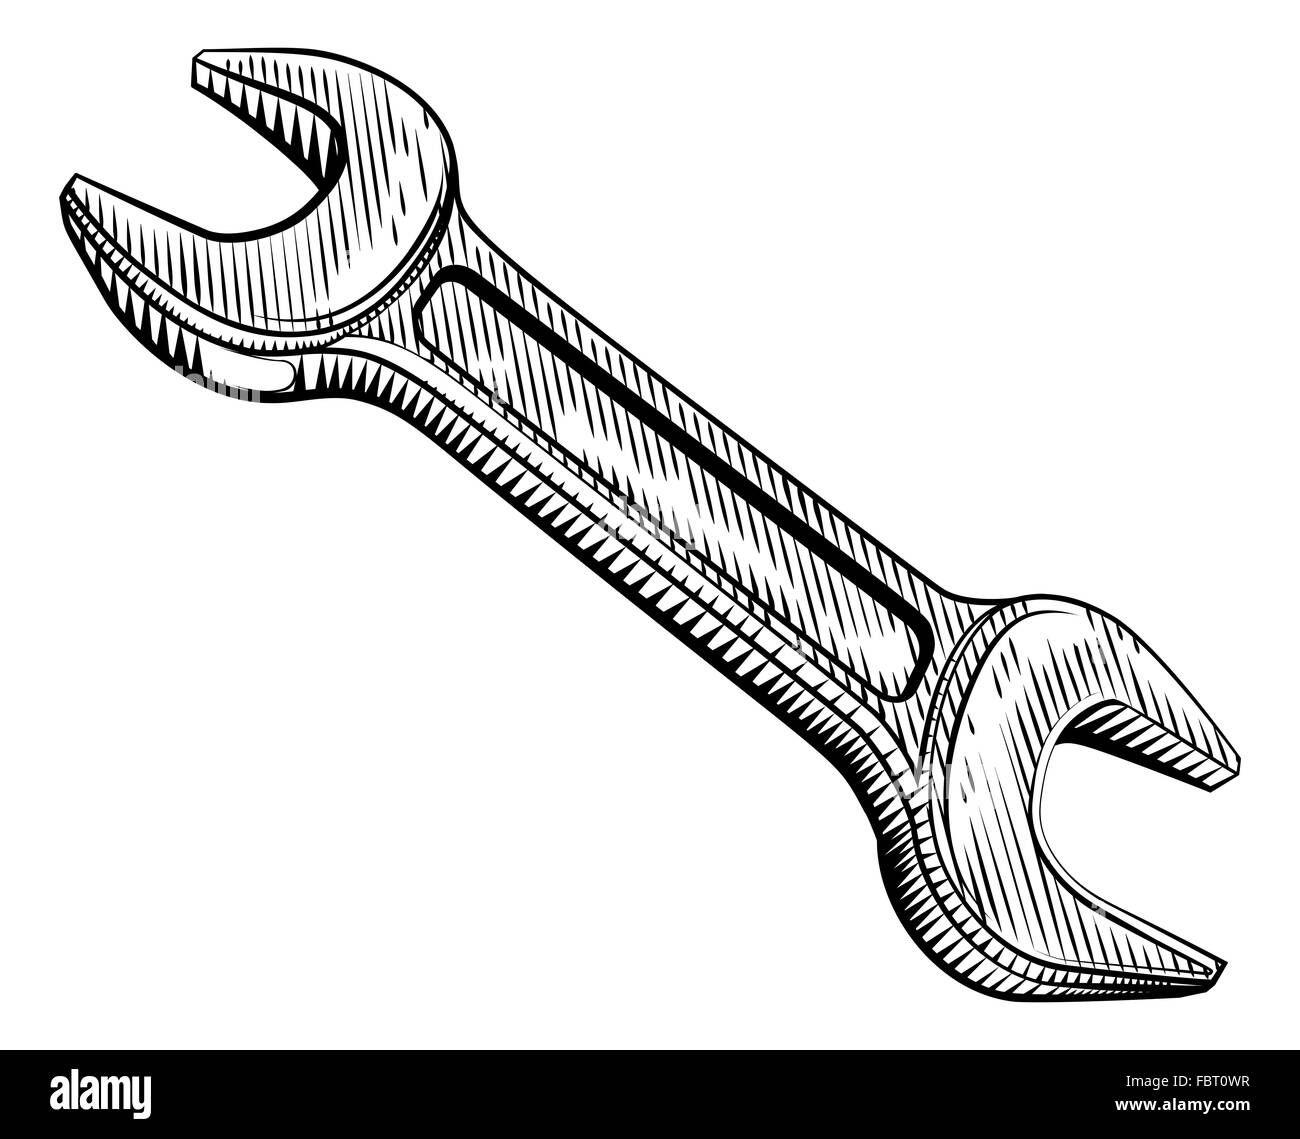 Un meccanico o chiave per idraulici disegnato in un vintage retrò woodblock xilografia style Foto Stock